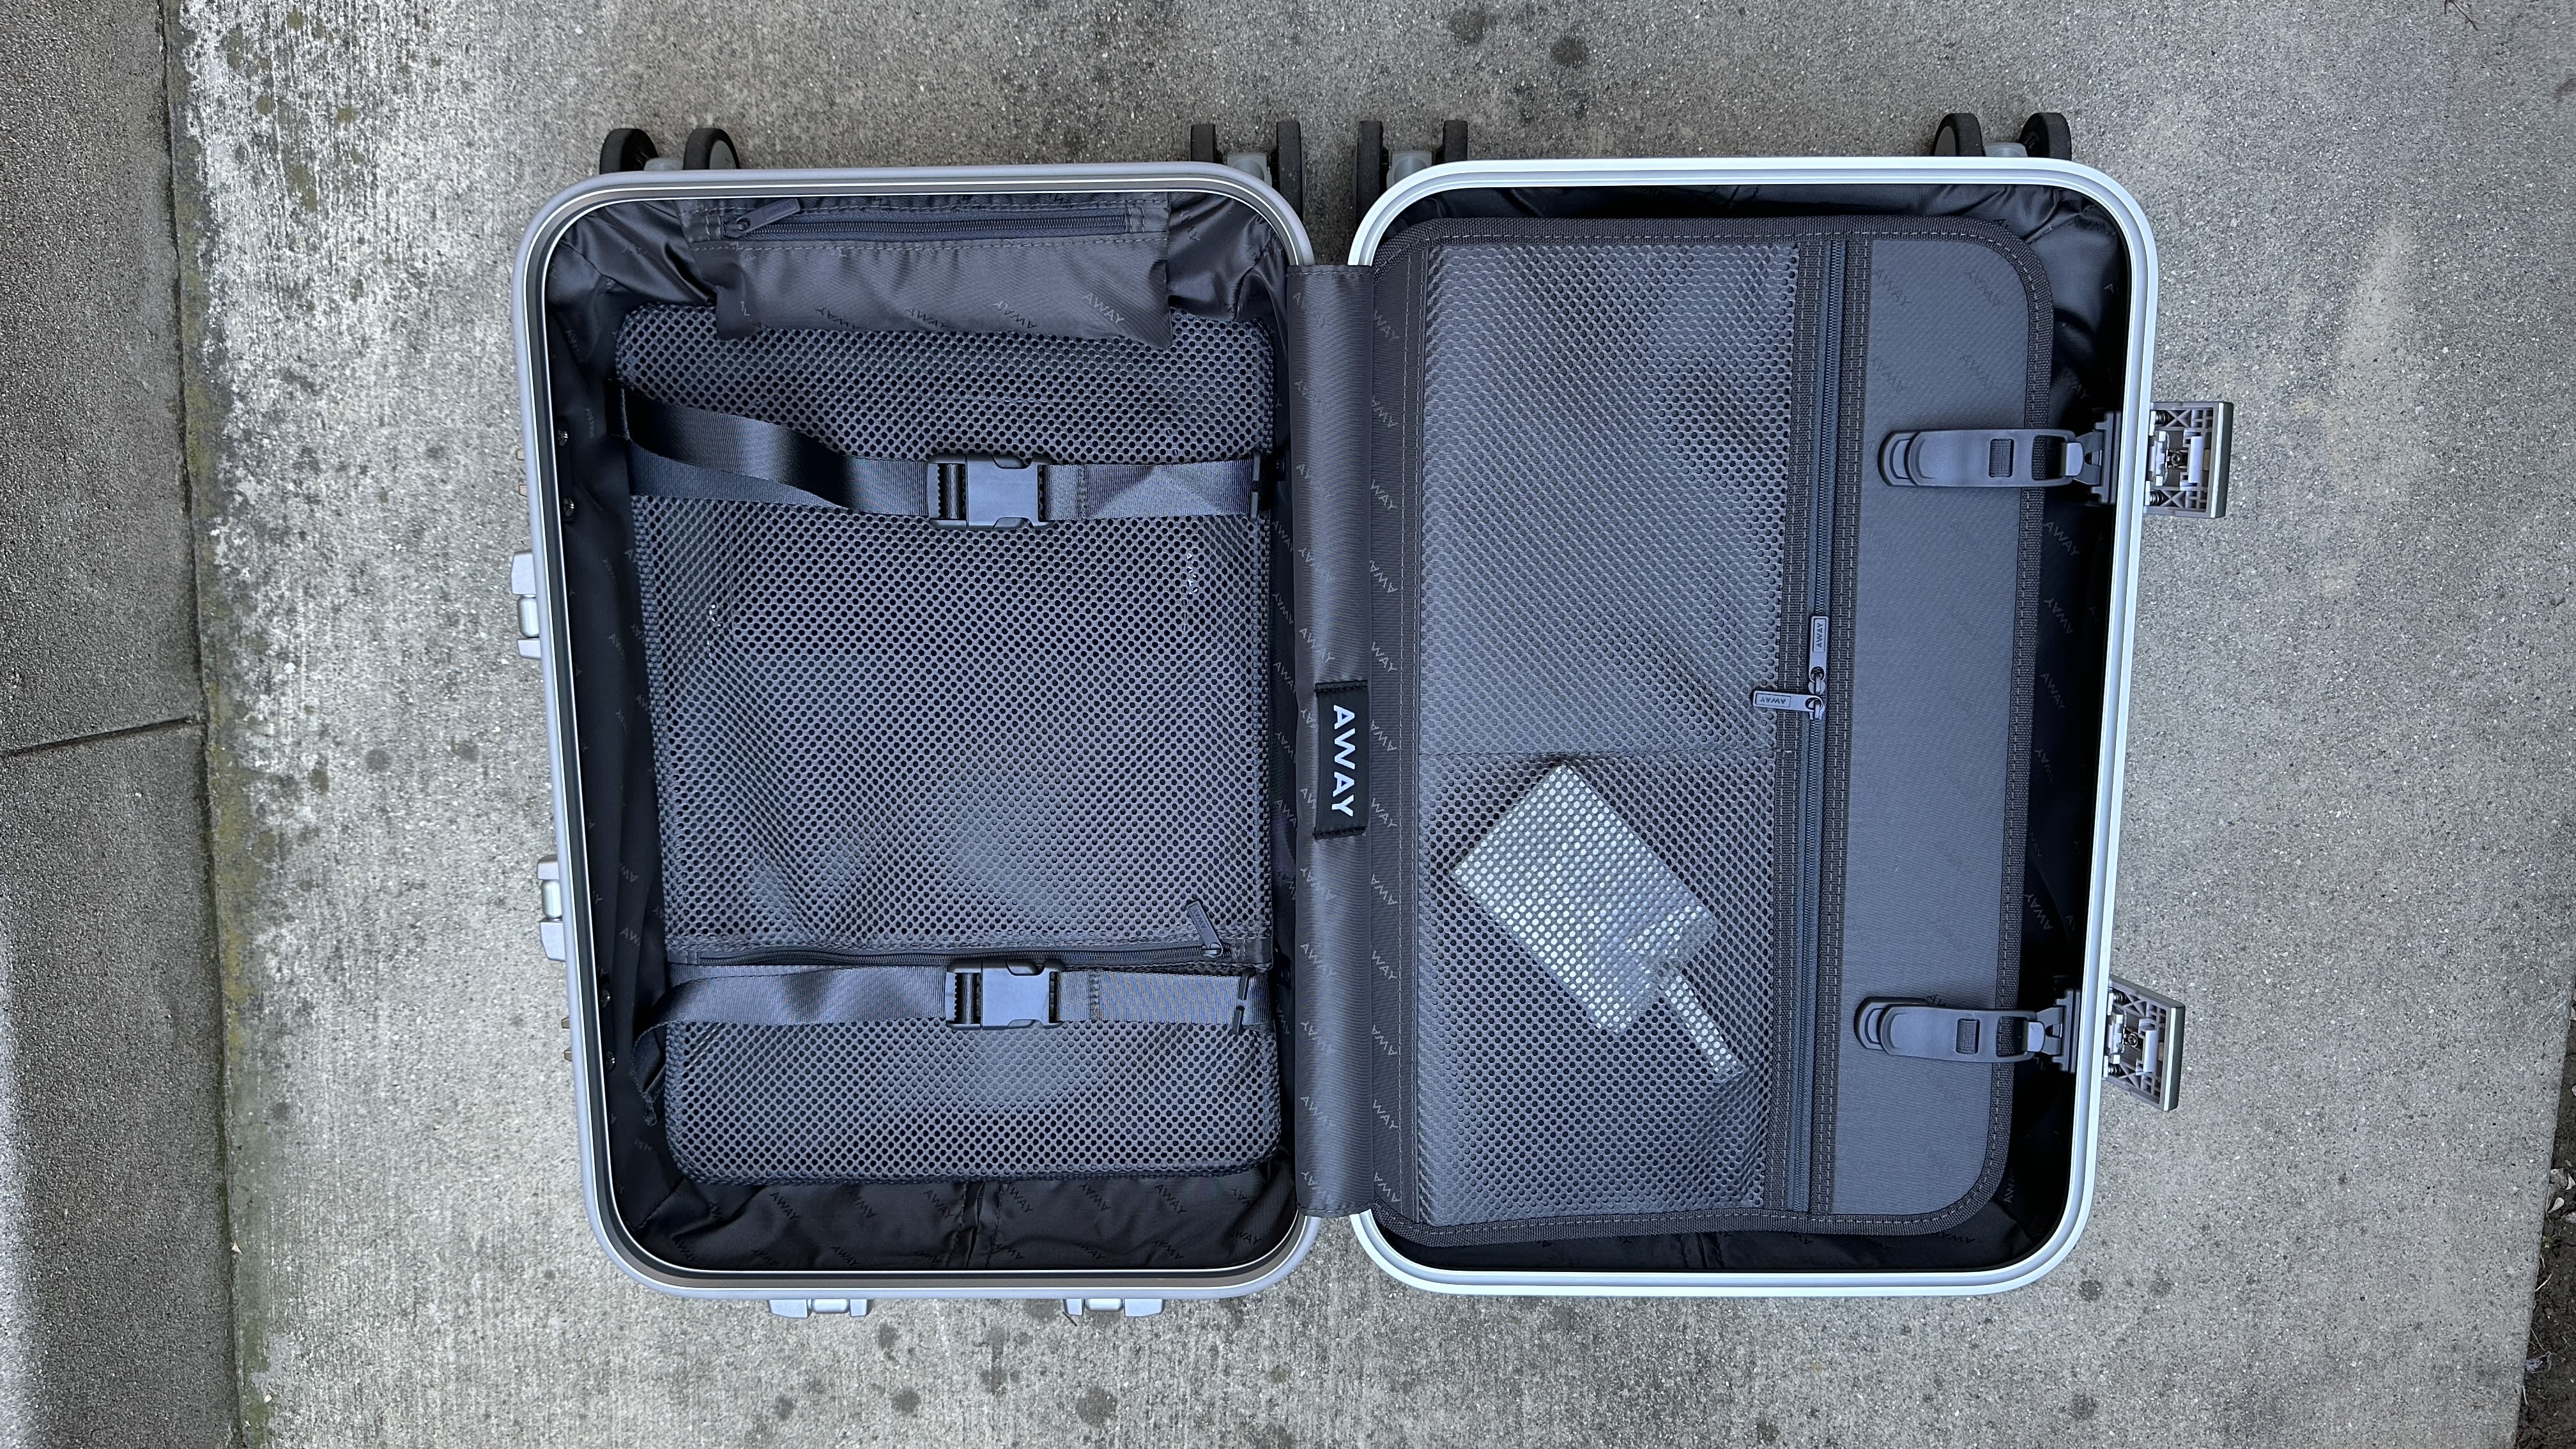 Classic Check-In M Aluminium Suitcase, Silver